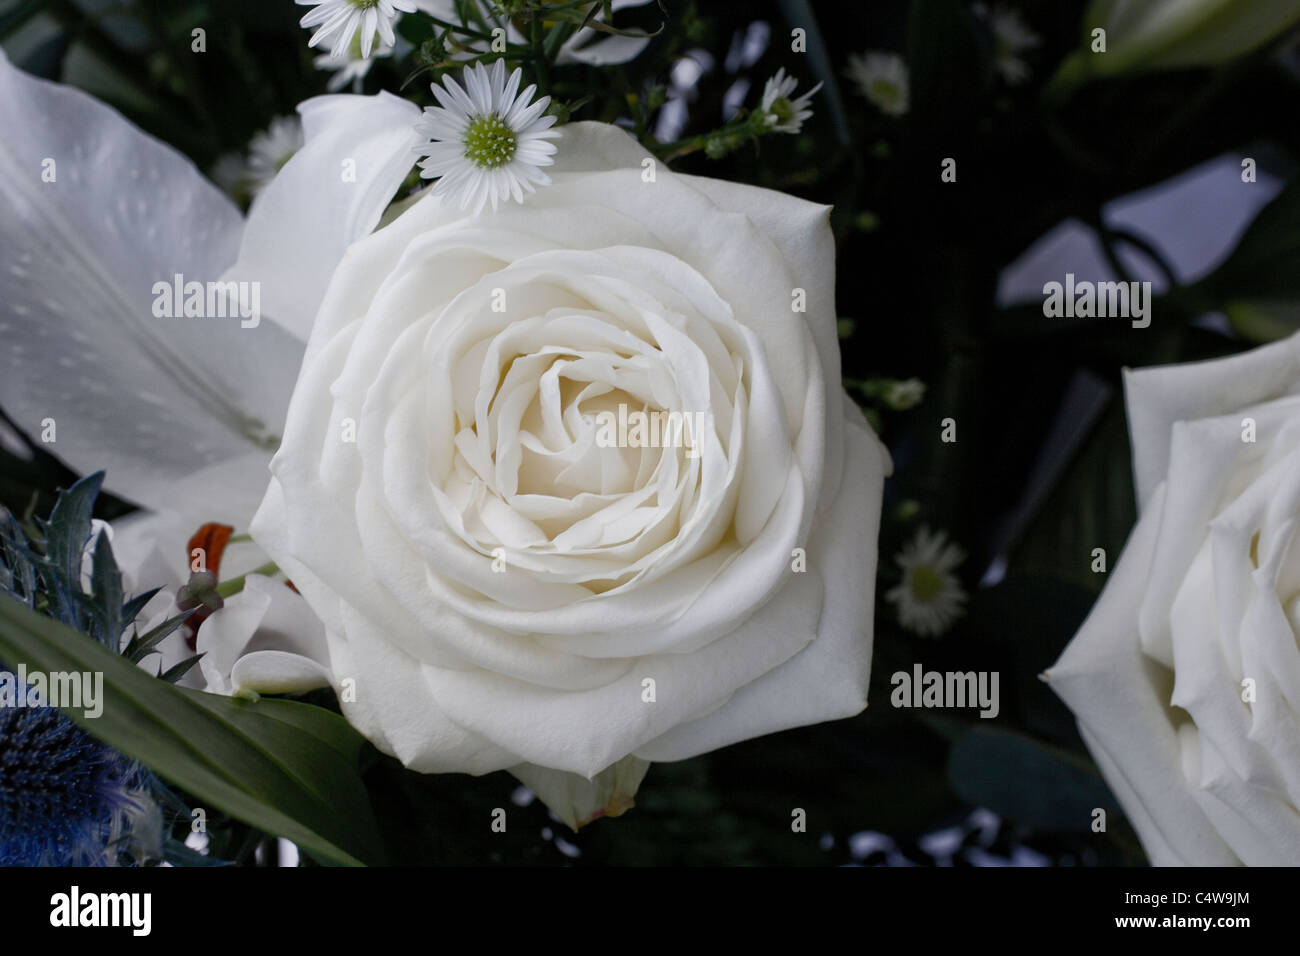 flower in bloom,bloom,rose,rose head,petals, Stock Photo